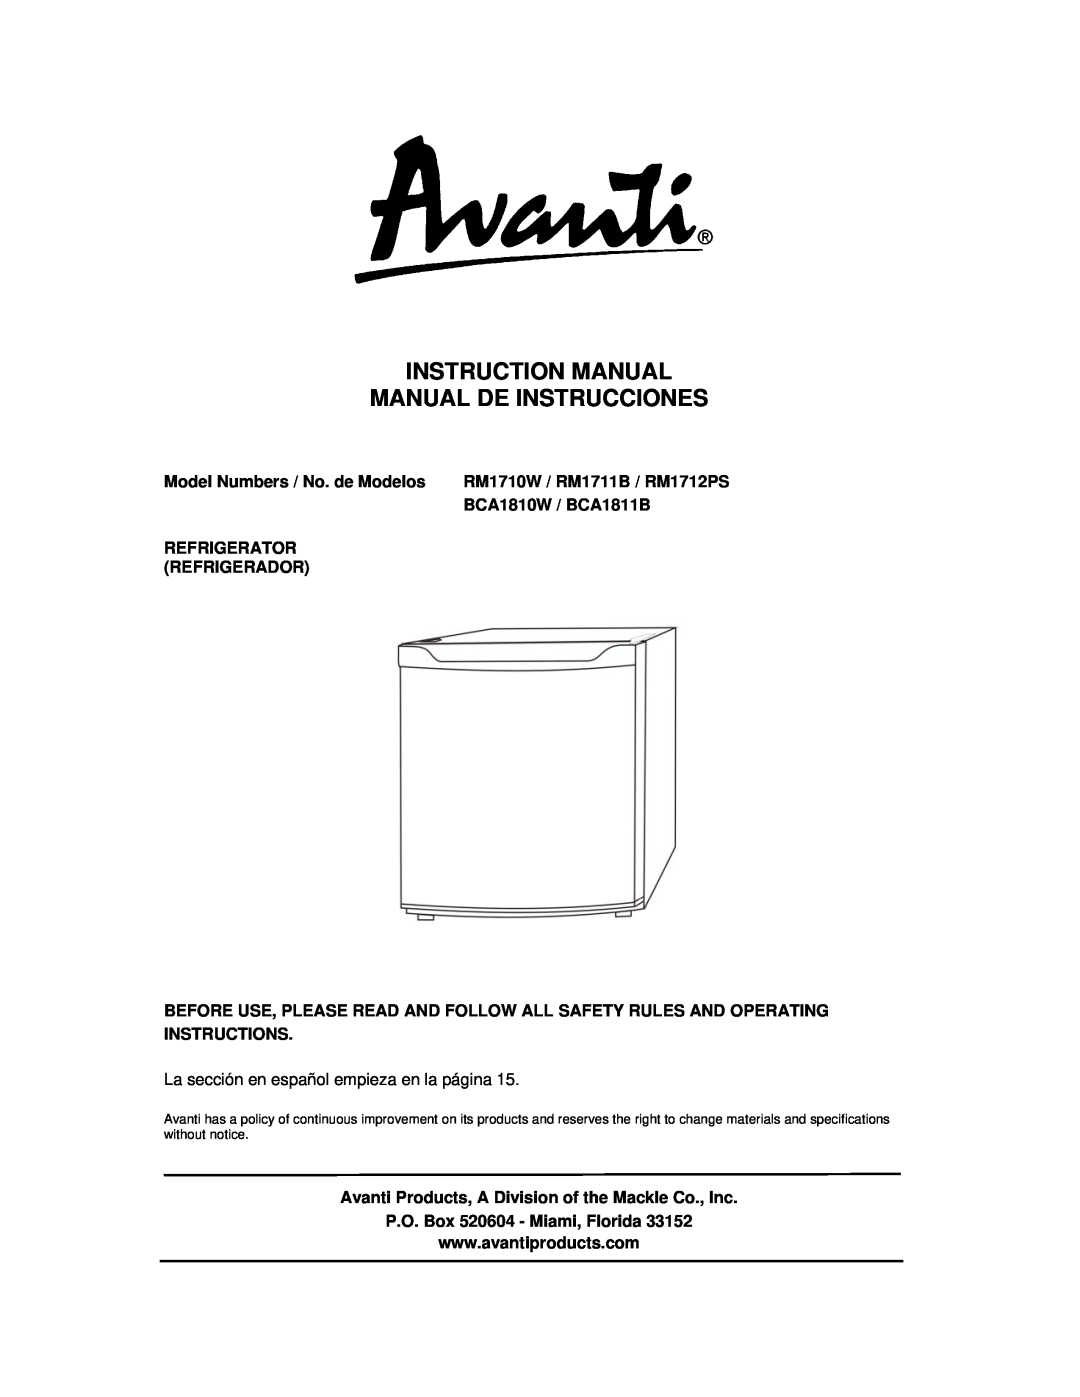 Avanti RM1712PS instruction manual Model Numbers / No. de Modelos, BCA1810W / BCA1811B, Refrigerator, Refrigerador 